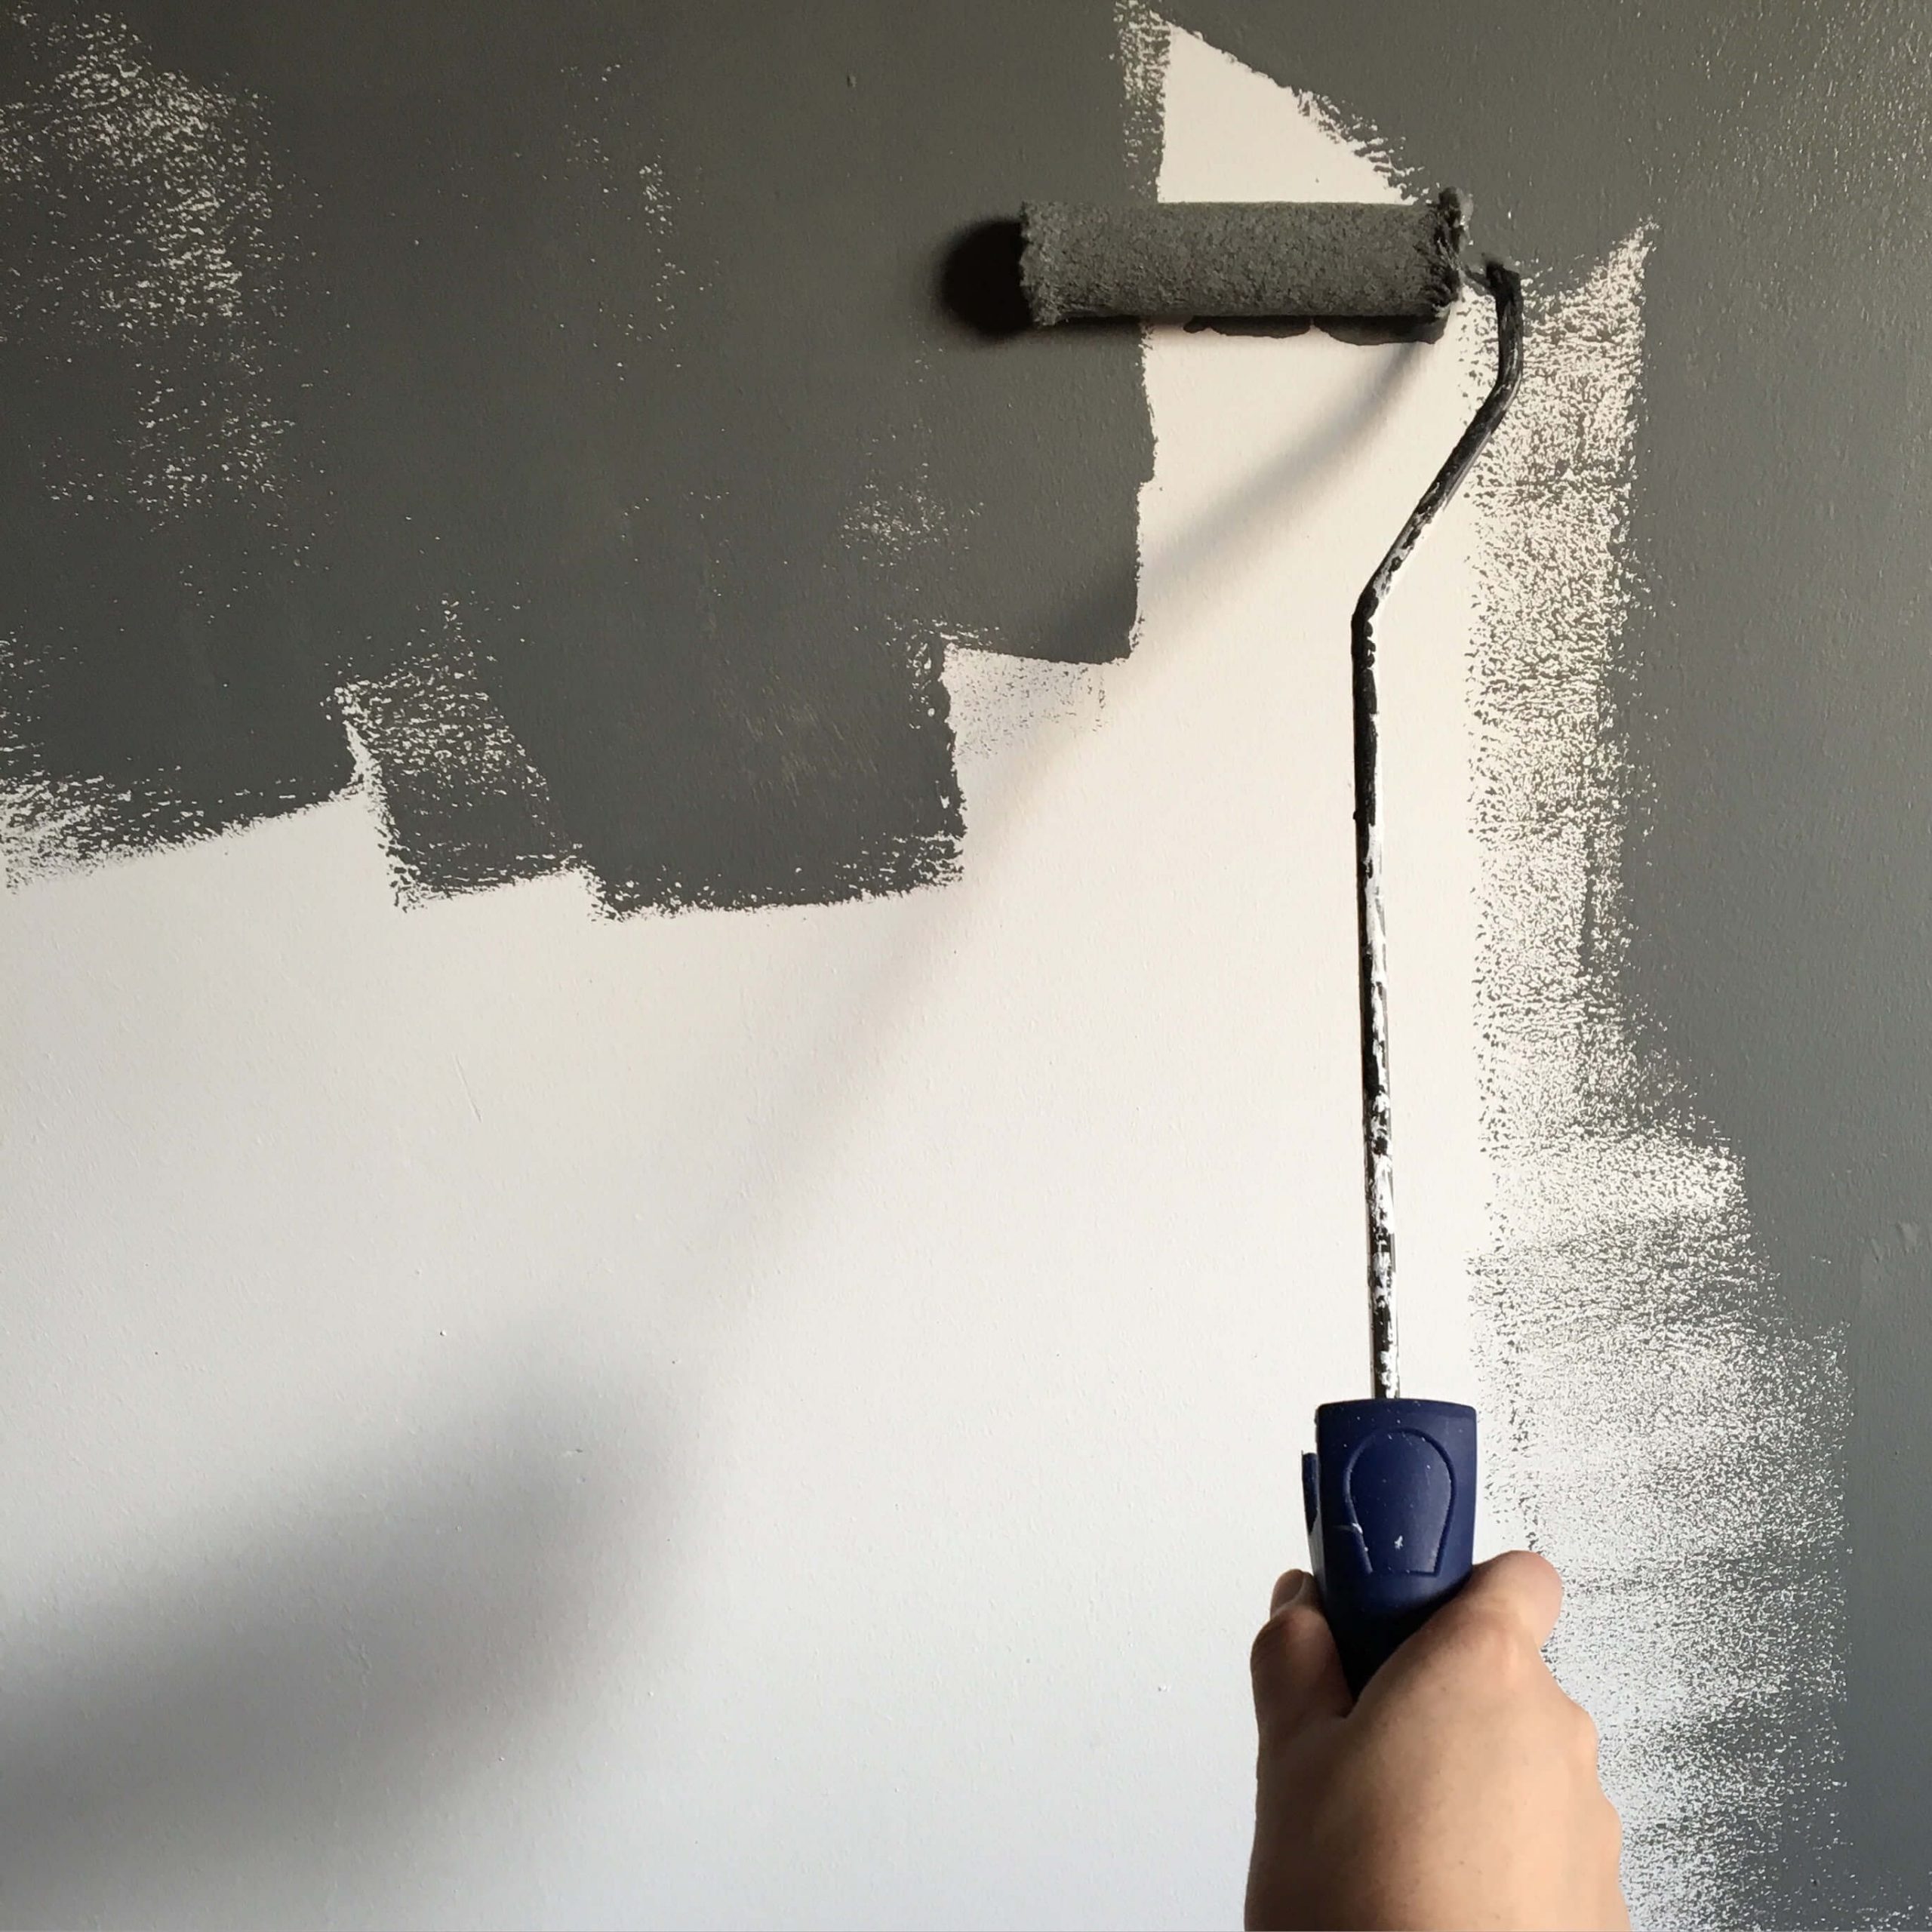 En kolay duvar boyama teknikleri nelerdir?